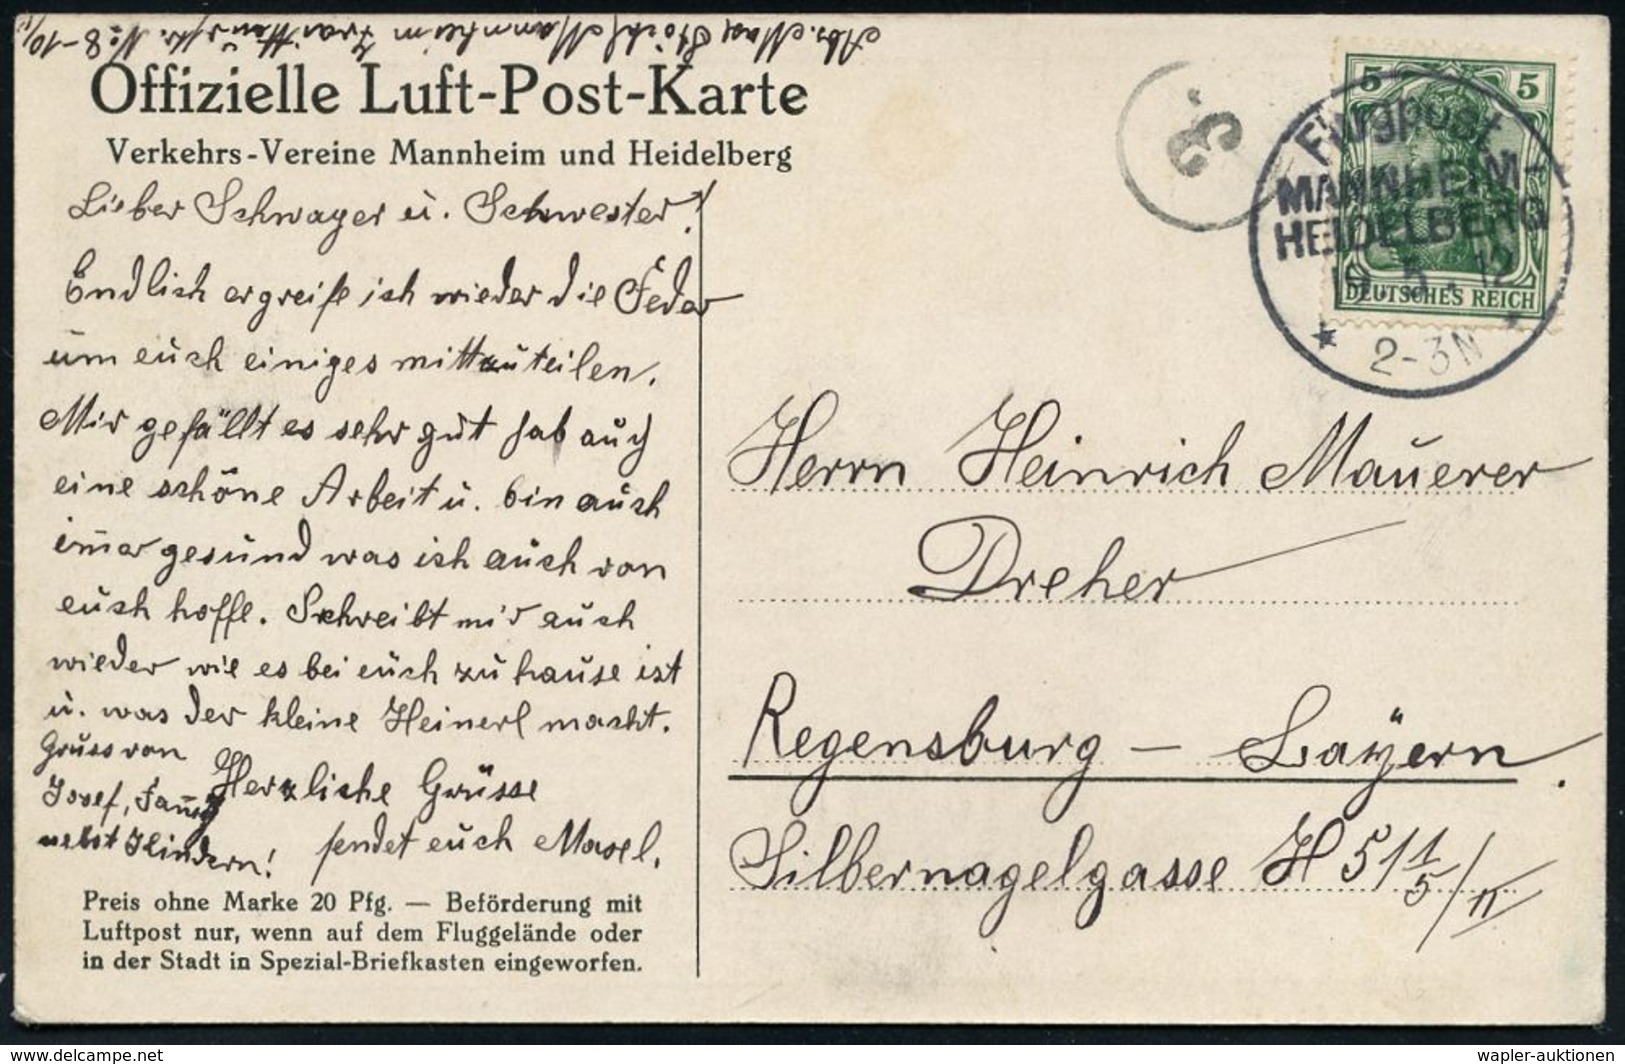 LUFTFAHRT-PIONIERE / PIONIER-FLÜGE : MANNHEIM-/ HEIDELBERG/ Flugpost/ ** 1912 (19.5.) SSt Auf Offiz. Flugpost-Sonder-Kt. - Sonstige (Luft)